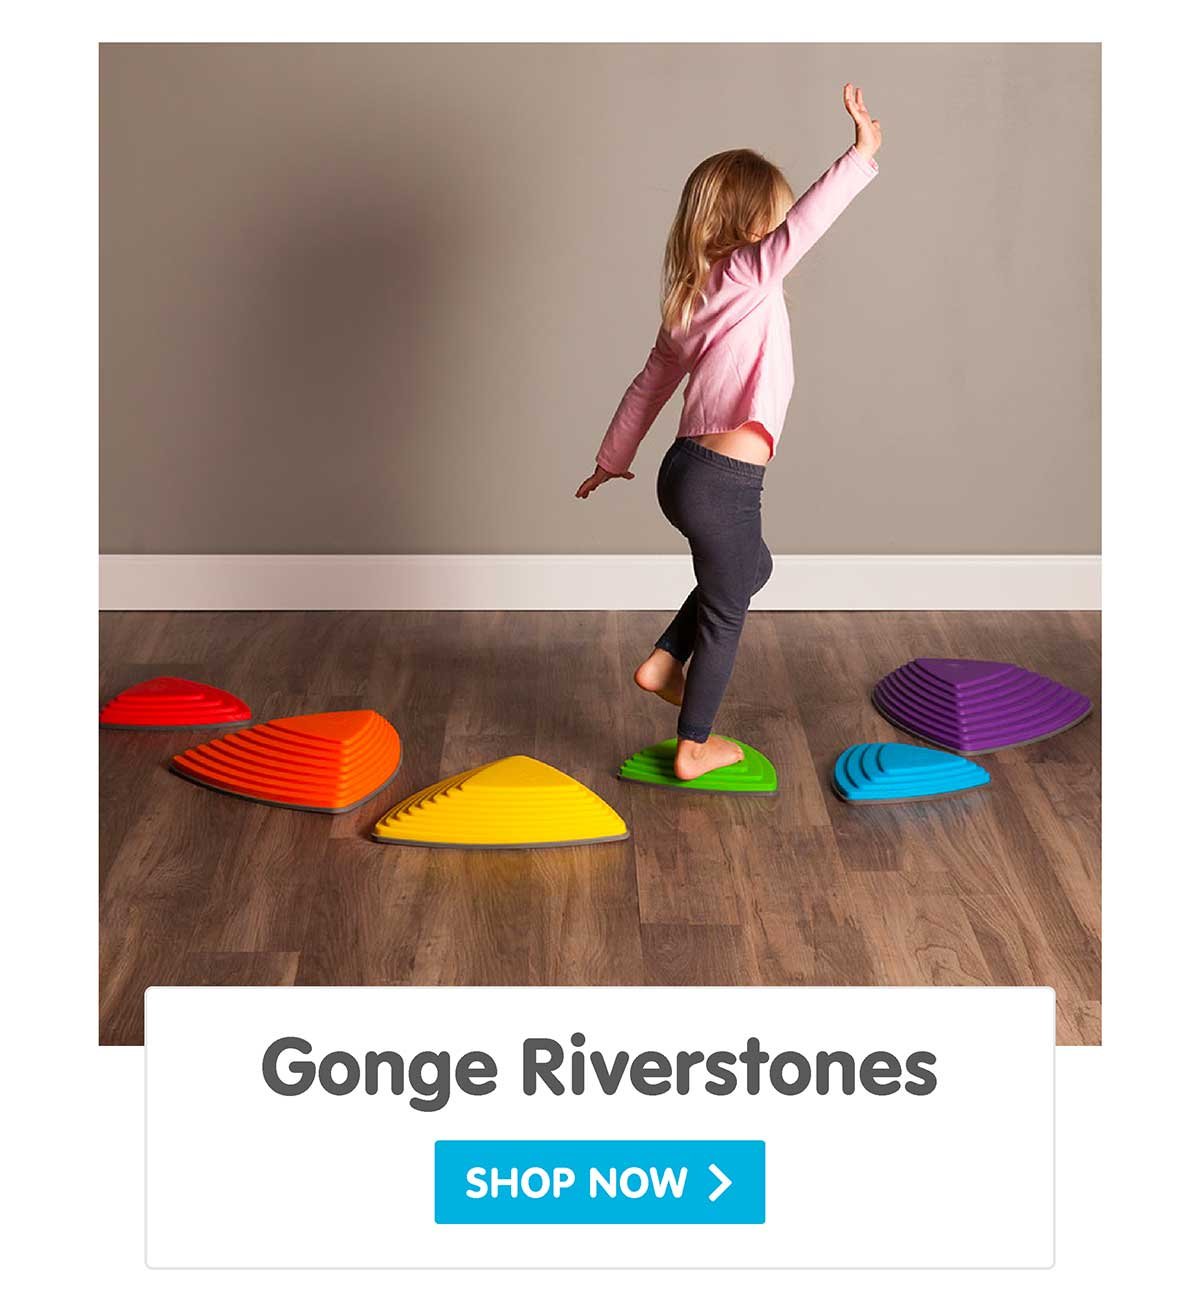 Gonge Riverstones